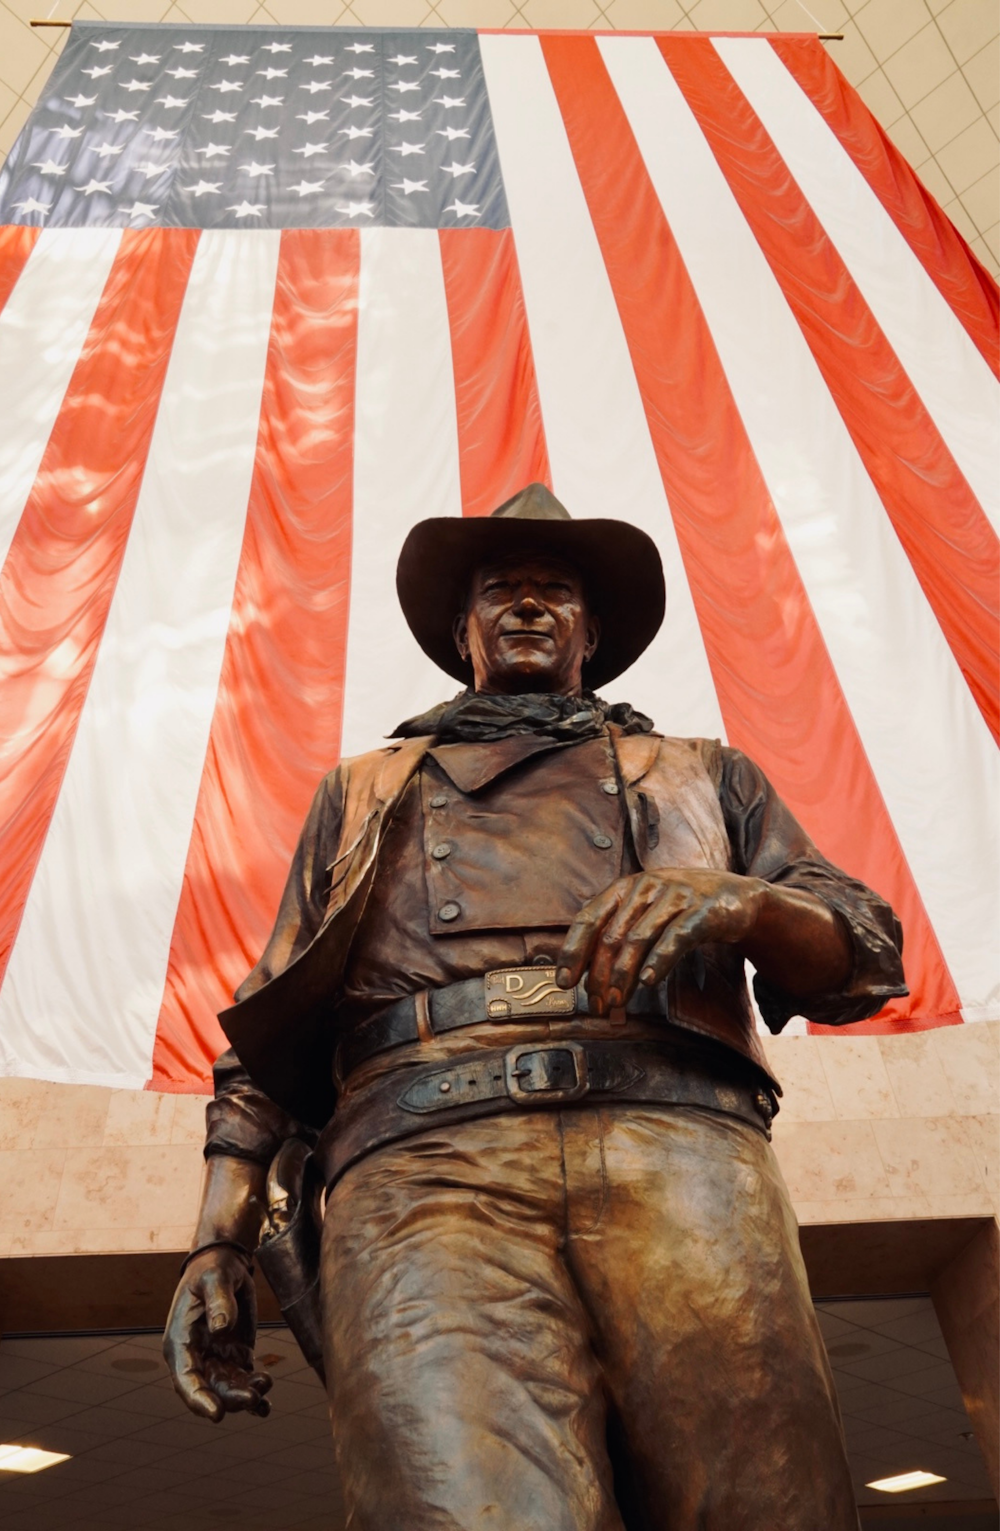 Una estatua de un hombre con un sombrero de vaquero con una bandera estadounidense en el fondo